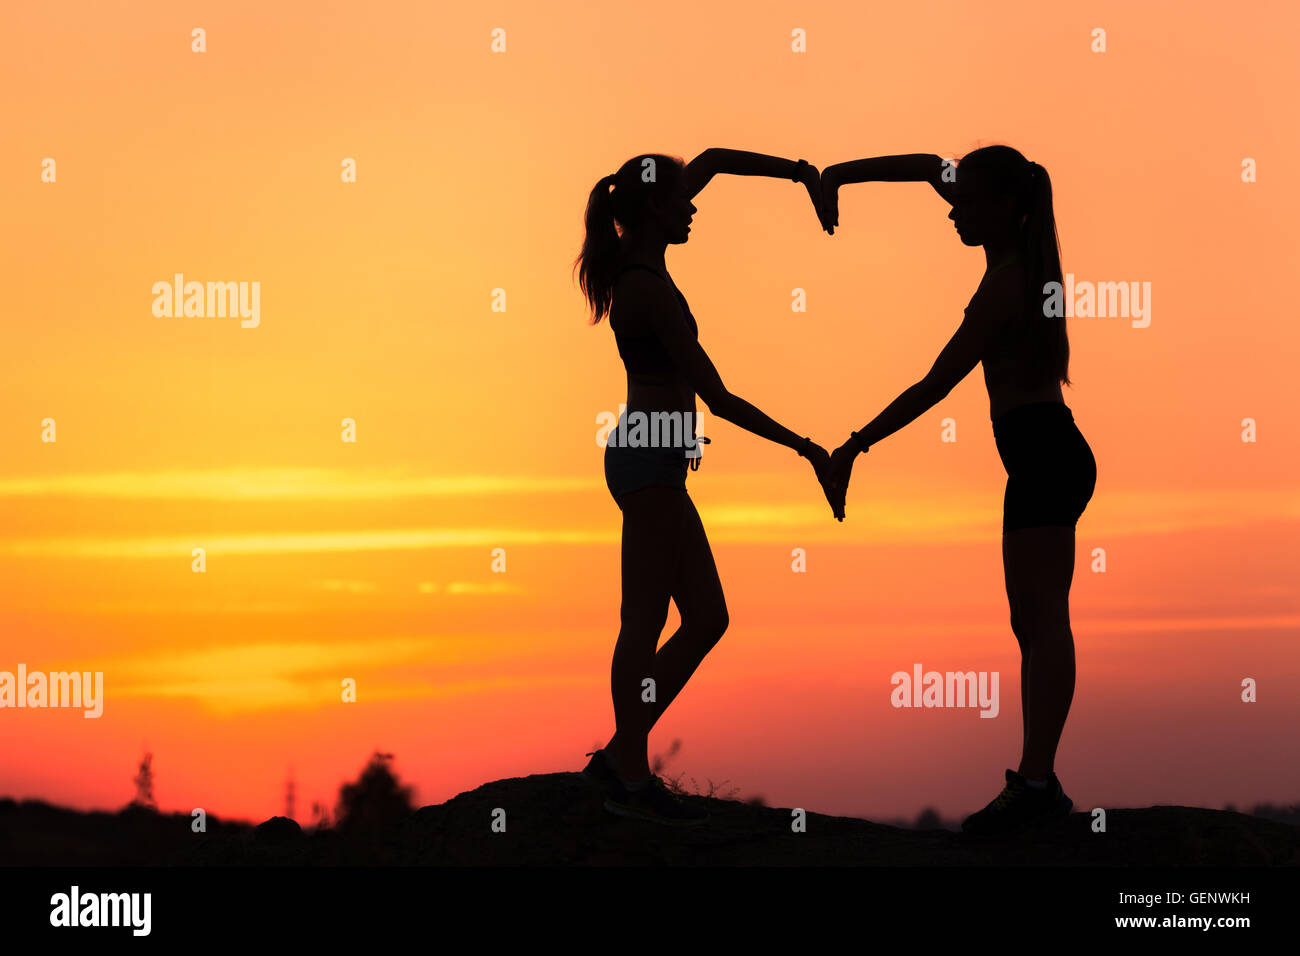 Paysage avec silhouette de young women holding hands en forme de coeur sur le fond de ciel coloré au coucher du soleil dans summ Banque D'Images